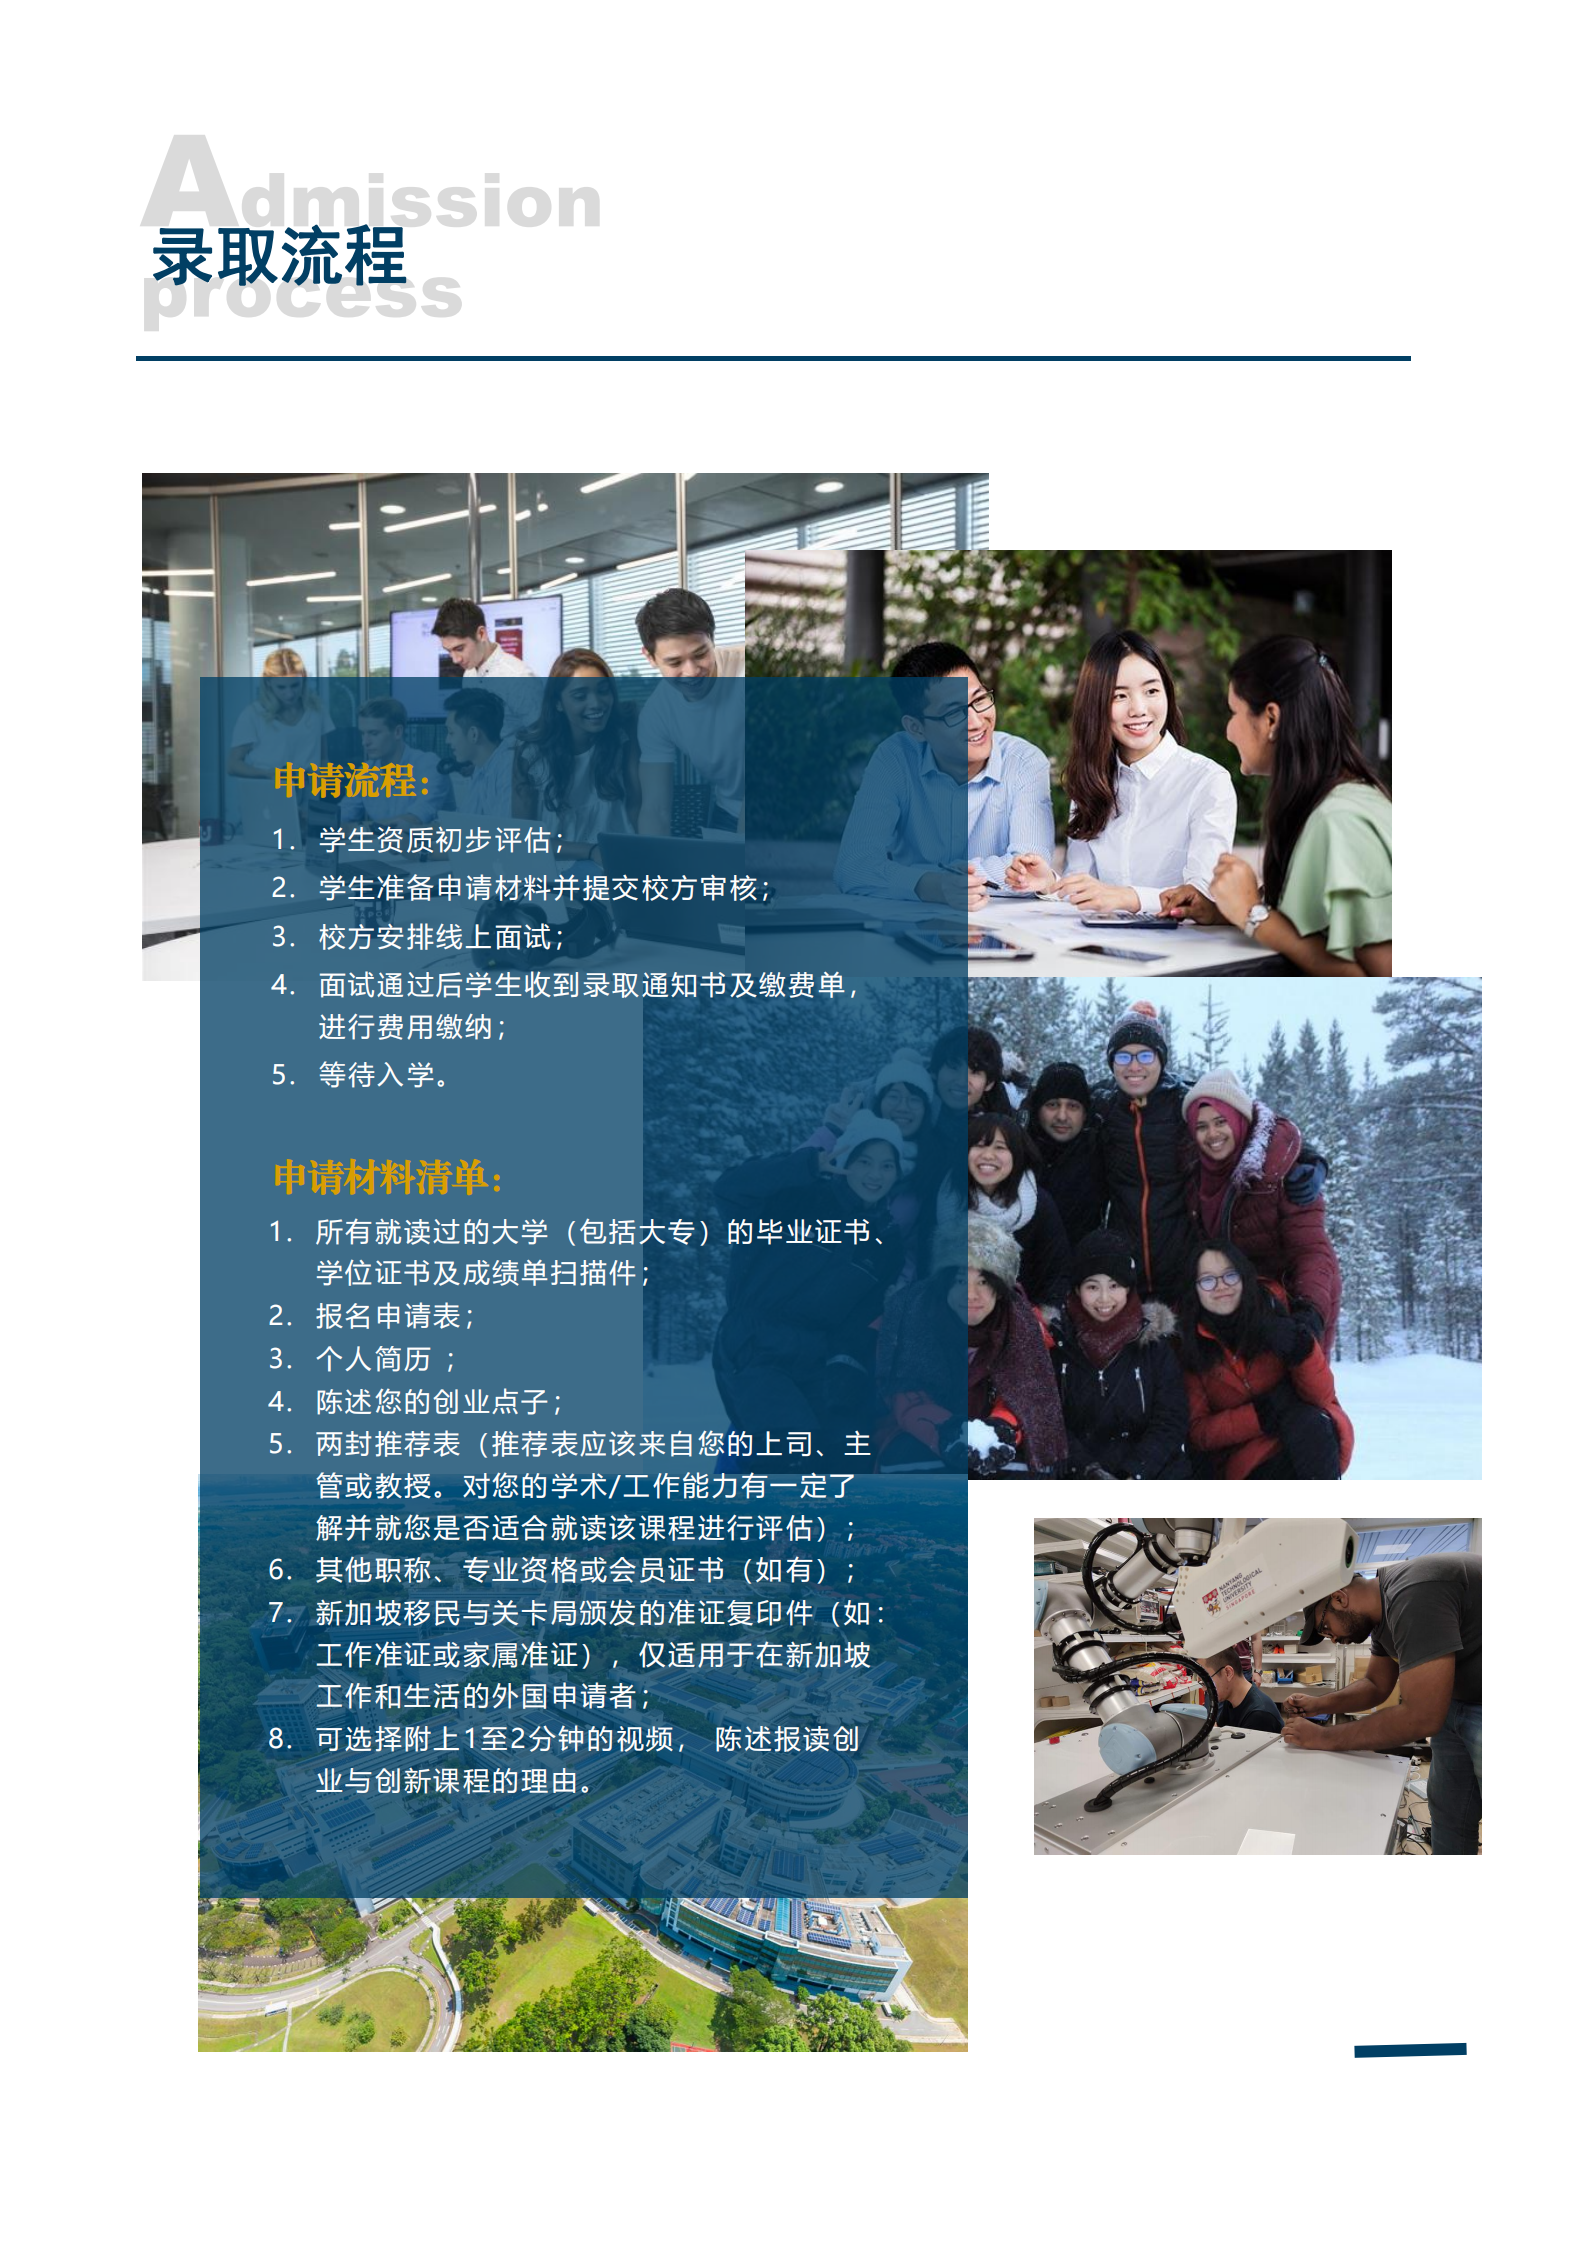 新加坡南洋理工大学 创业与创新微硕士项目